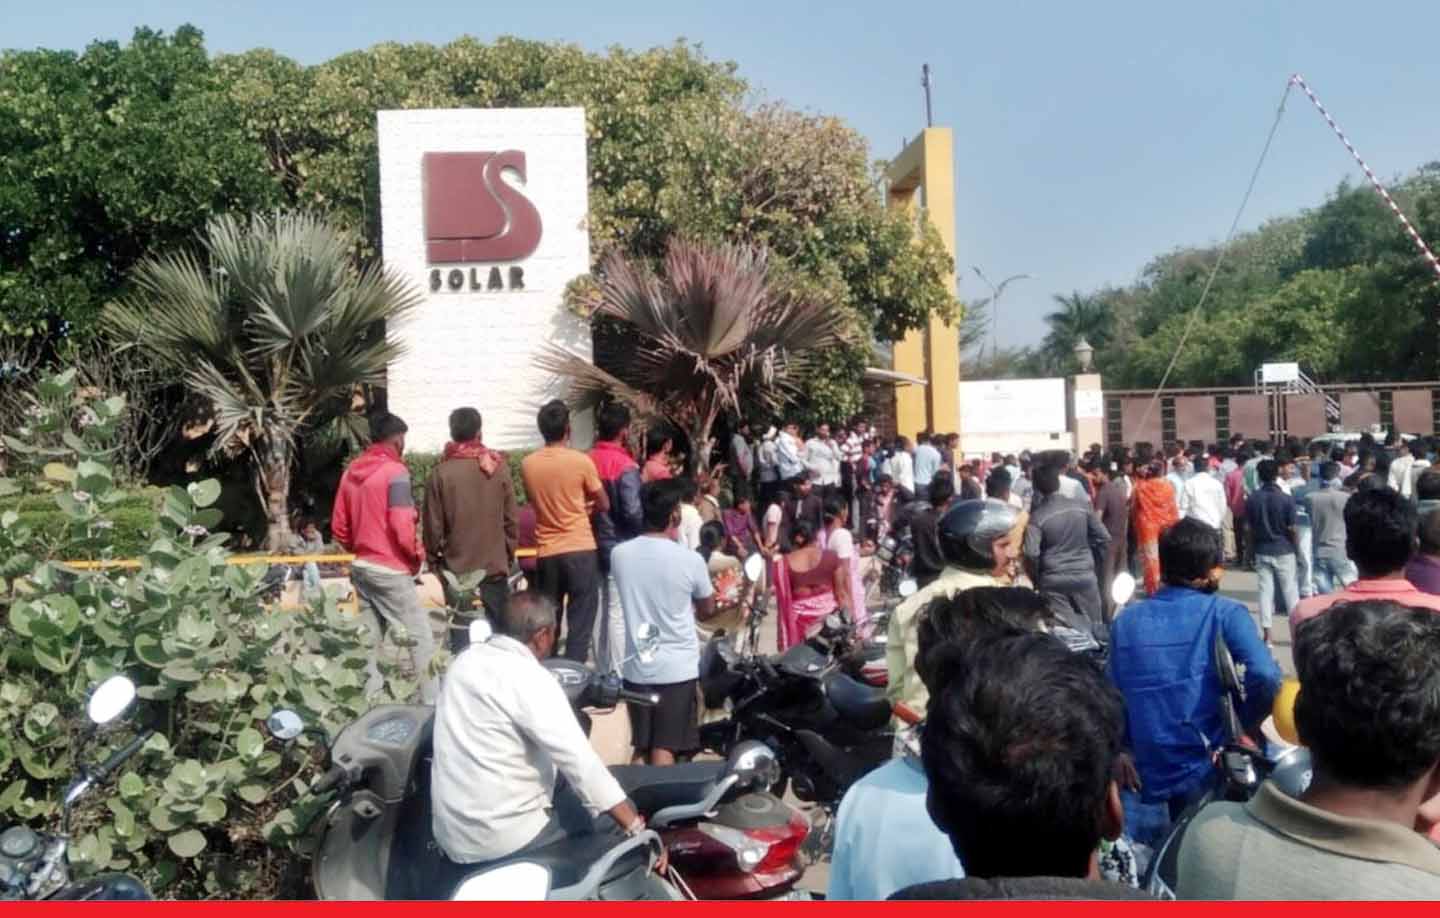 नागपुर में सोलर एक्सप्लोसिव कंपनी में बड़ा धमाका, कम से कम 9 लोगों की मौत